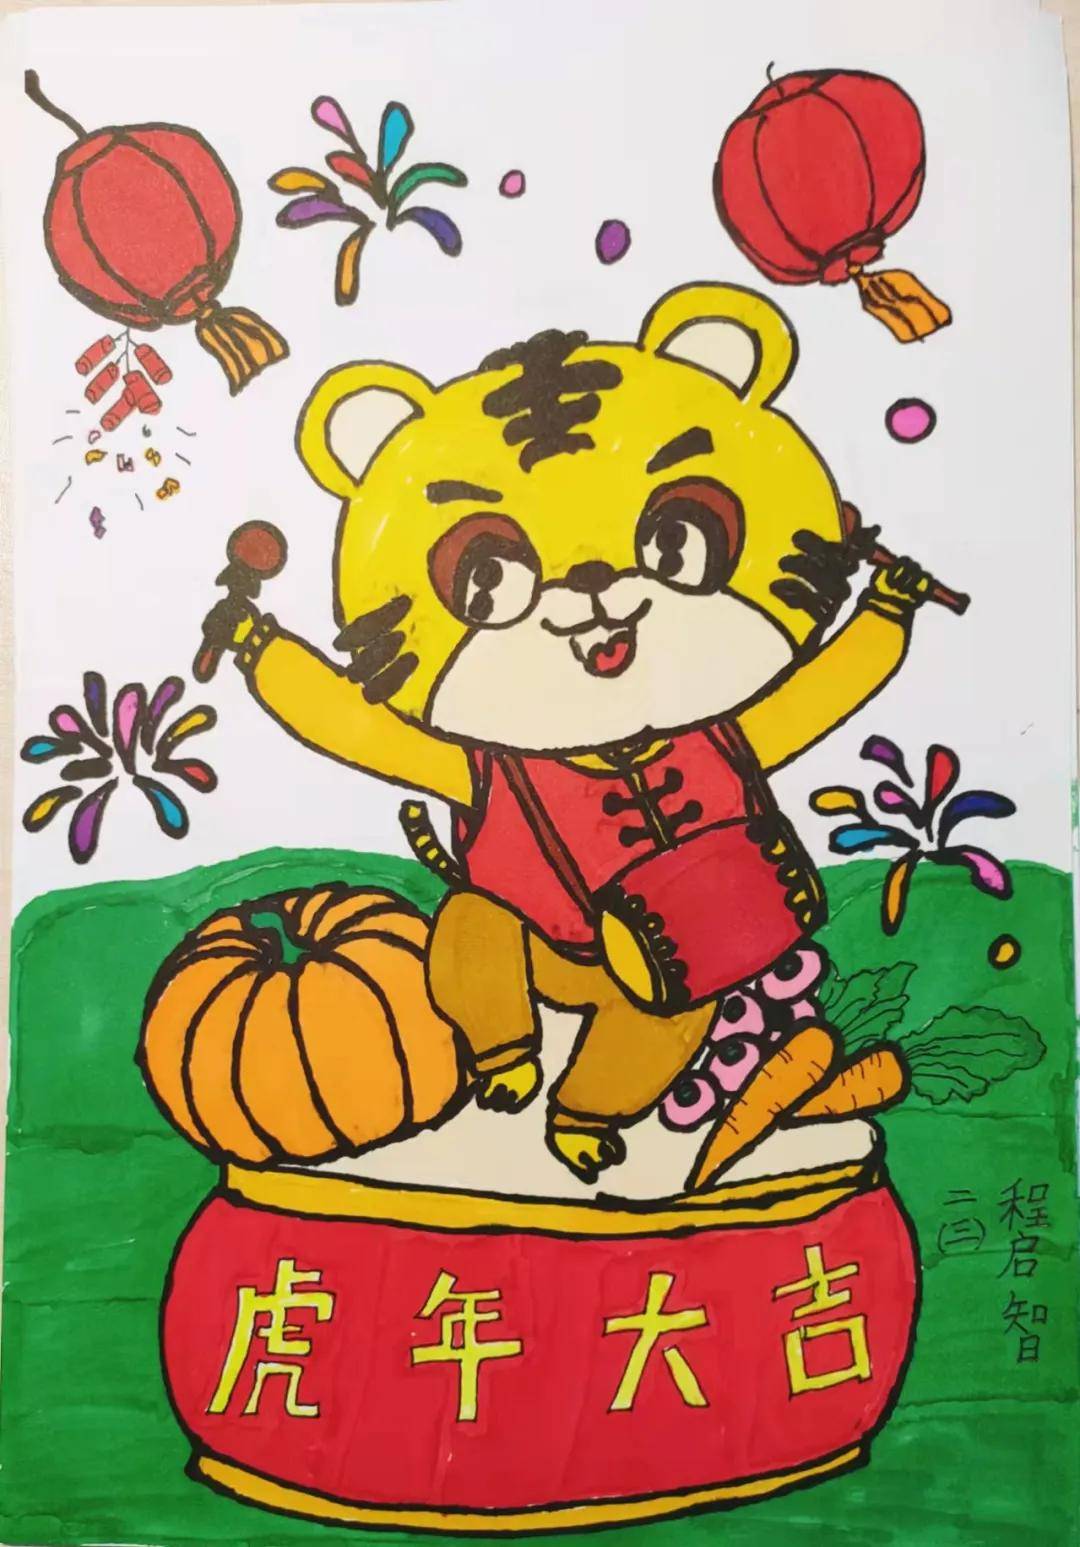 2022年是中国传统生肖虎年,为喜迎新春佳节,开德小学的小福虎们用手中